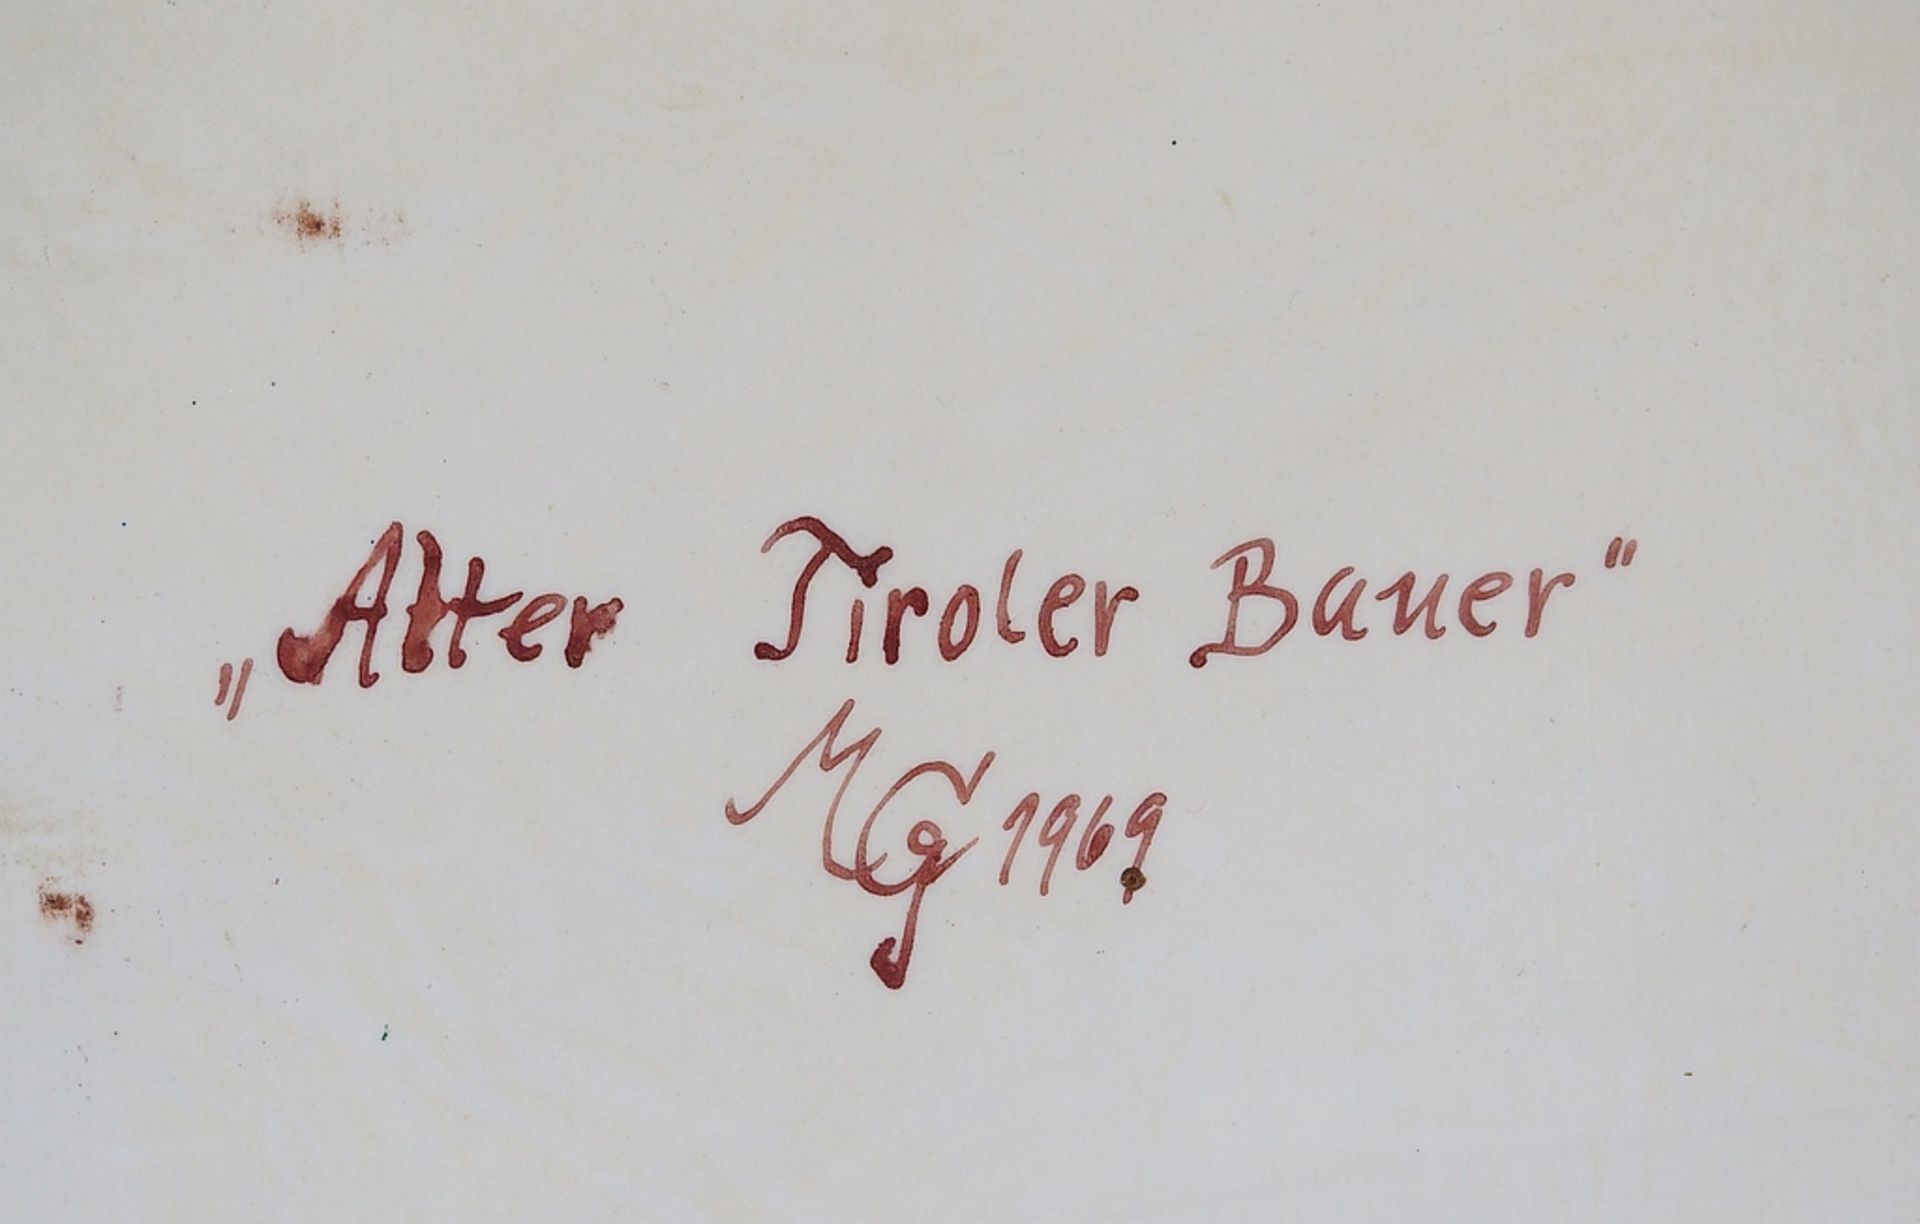 Porzellanbild mit Motiv nach Max Grötsch, "Tiroler Bauer", datiert 1969, - Bild 5 aus 6